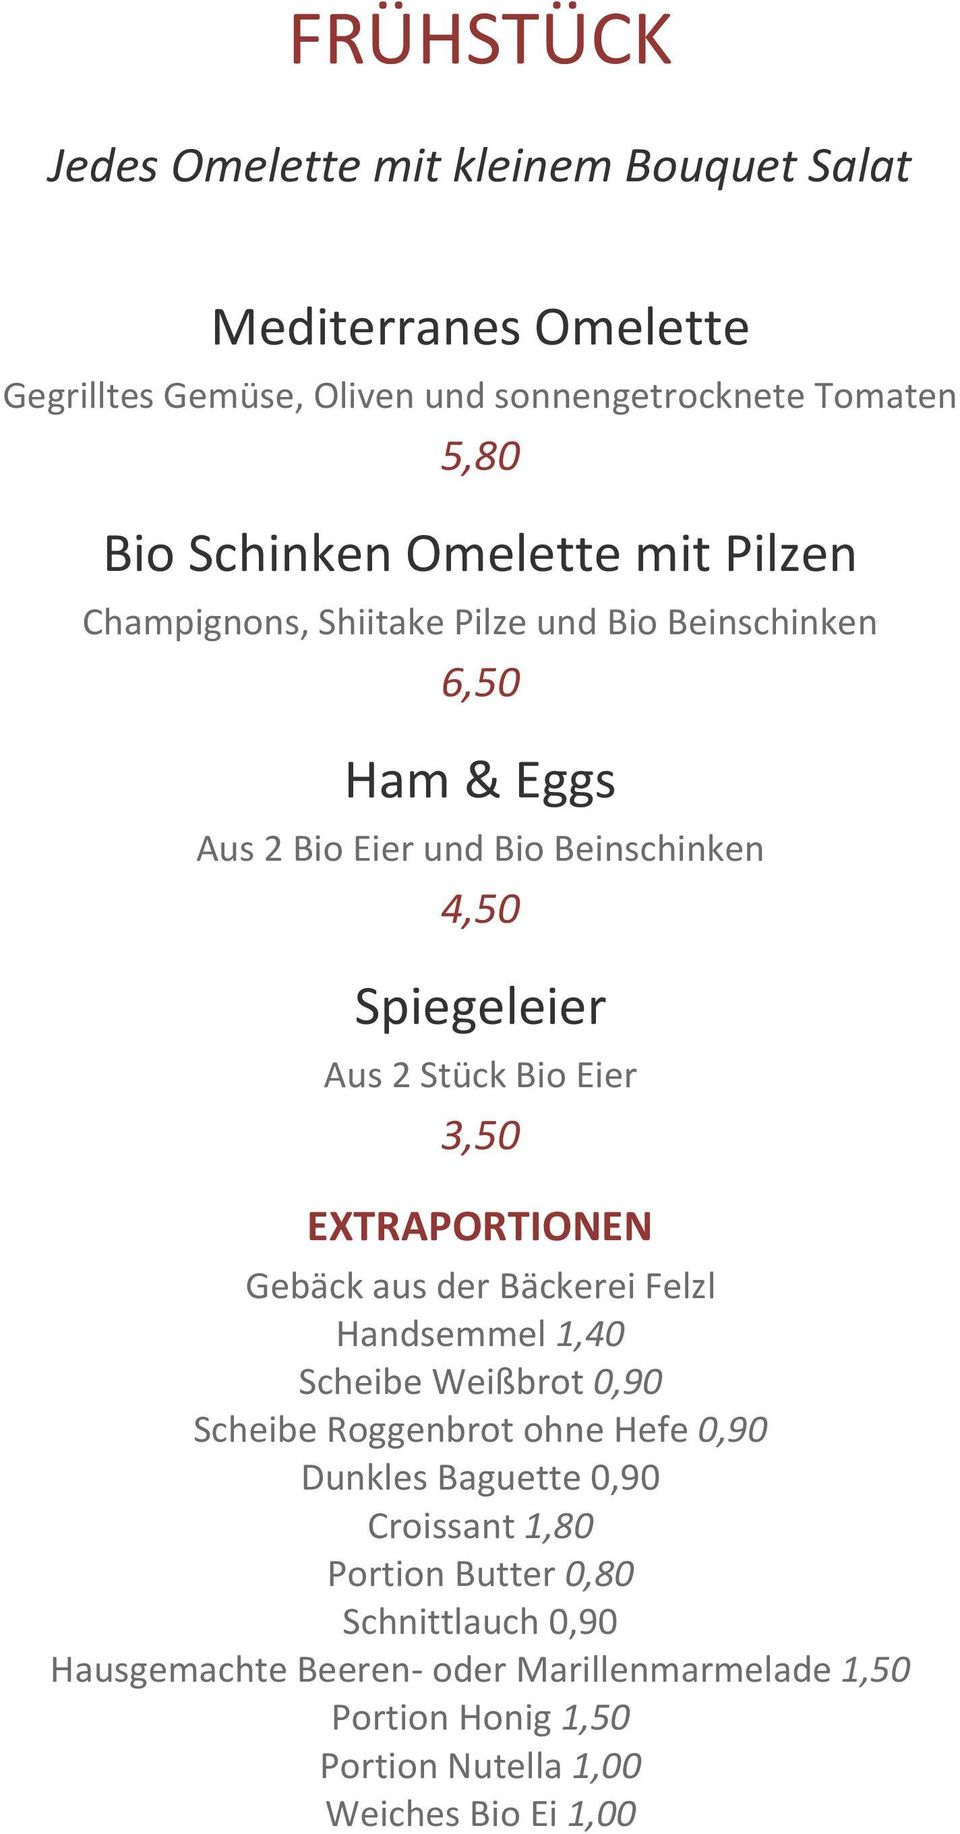 Bio Eier 3,50 EXTRAPORTIONEN Gebäck aus der Bäckerei Felzl Handsemmel 1,40 Scheibe Weißbrot 0,90 Scheibe Roggenbrot ohne Hefe 0,90 Dunkles Baguette 0,90